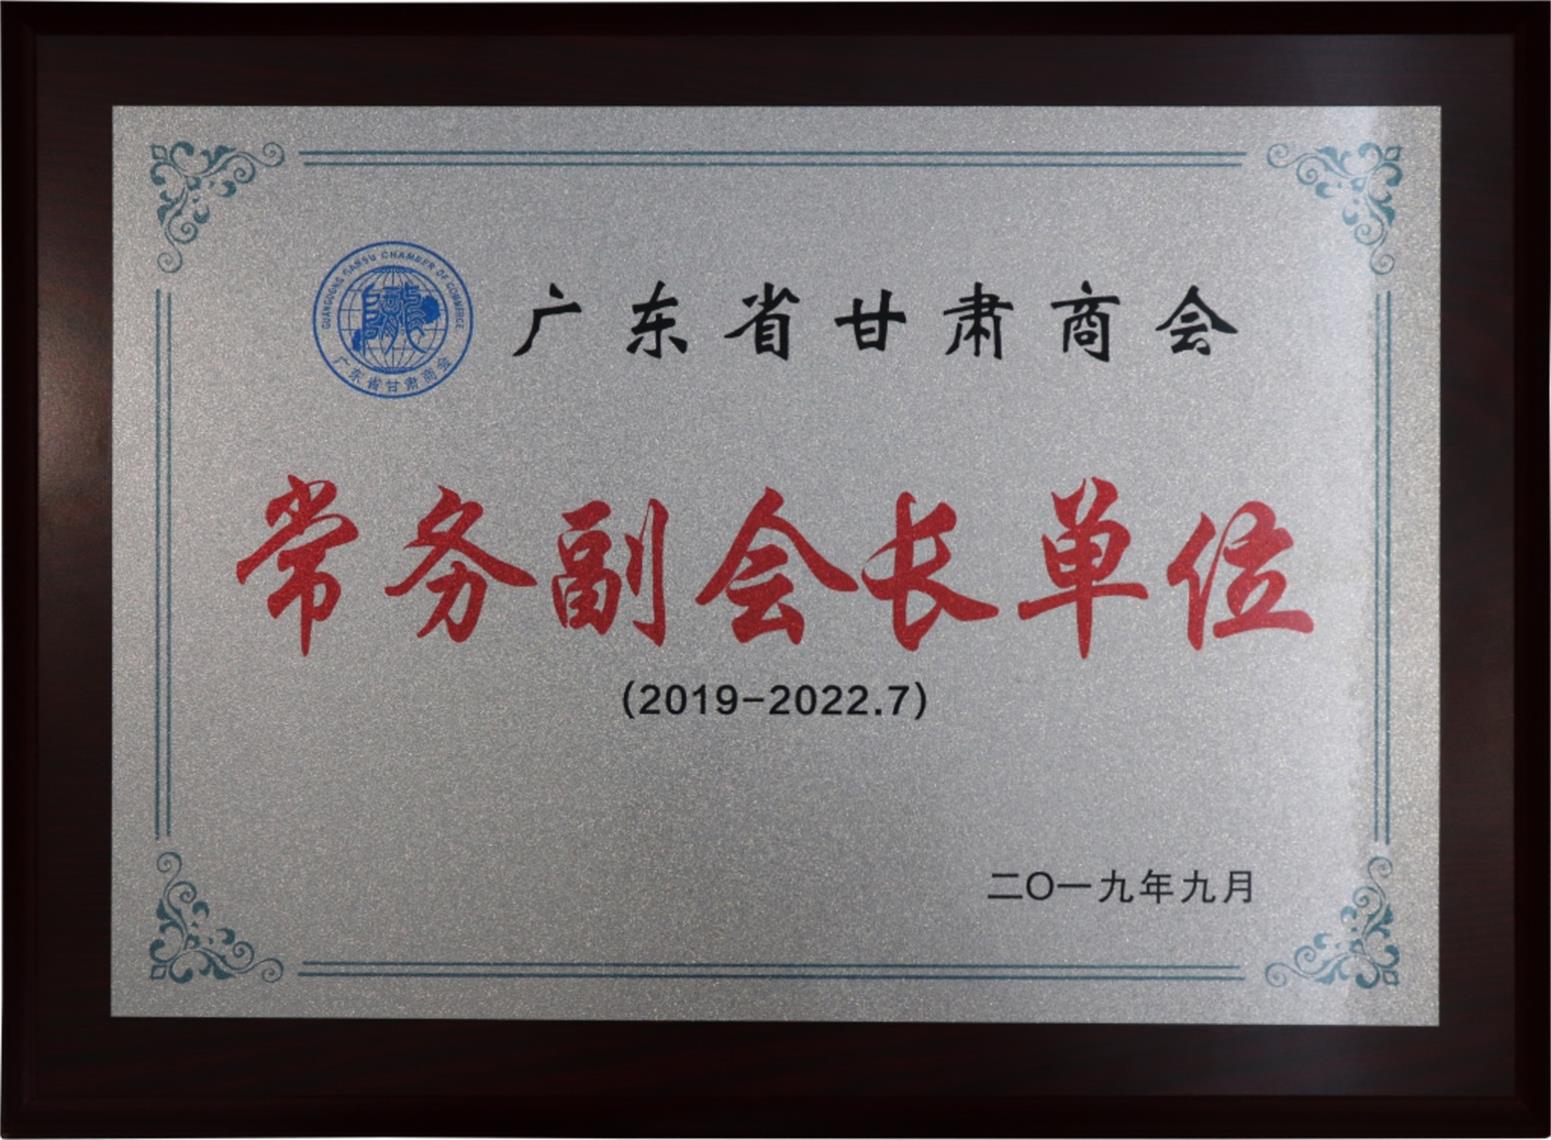 广东省甘肃商会常务副会长单位-牌匾-2019年9月至2022年7月